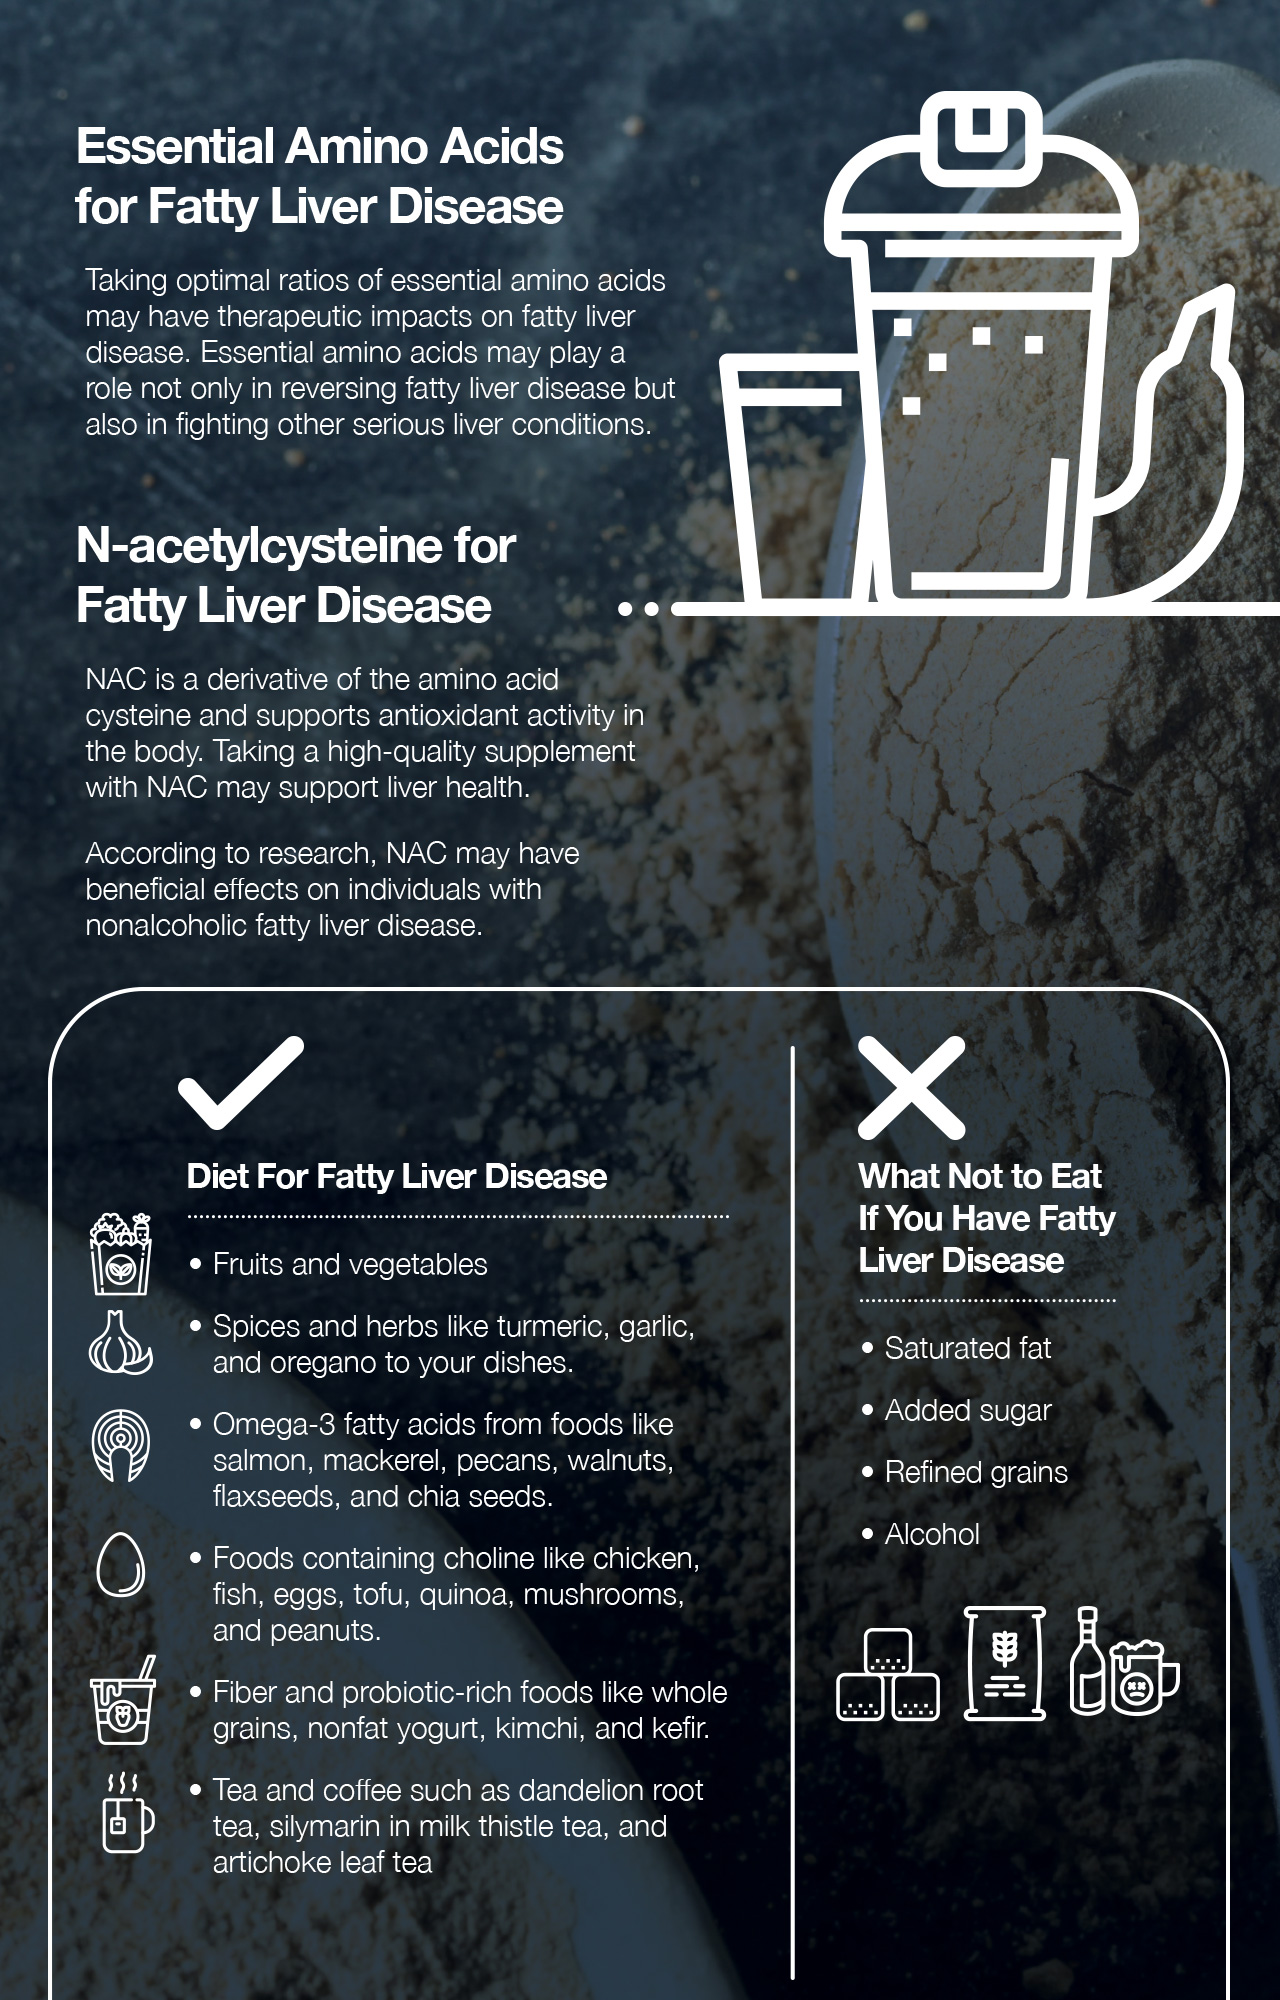 Essential Amino Acids For Fatty Liver